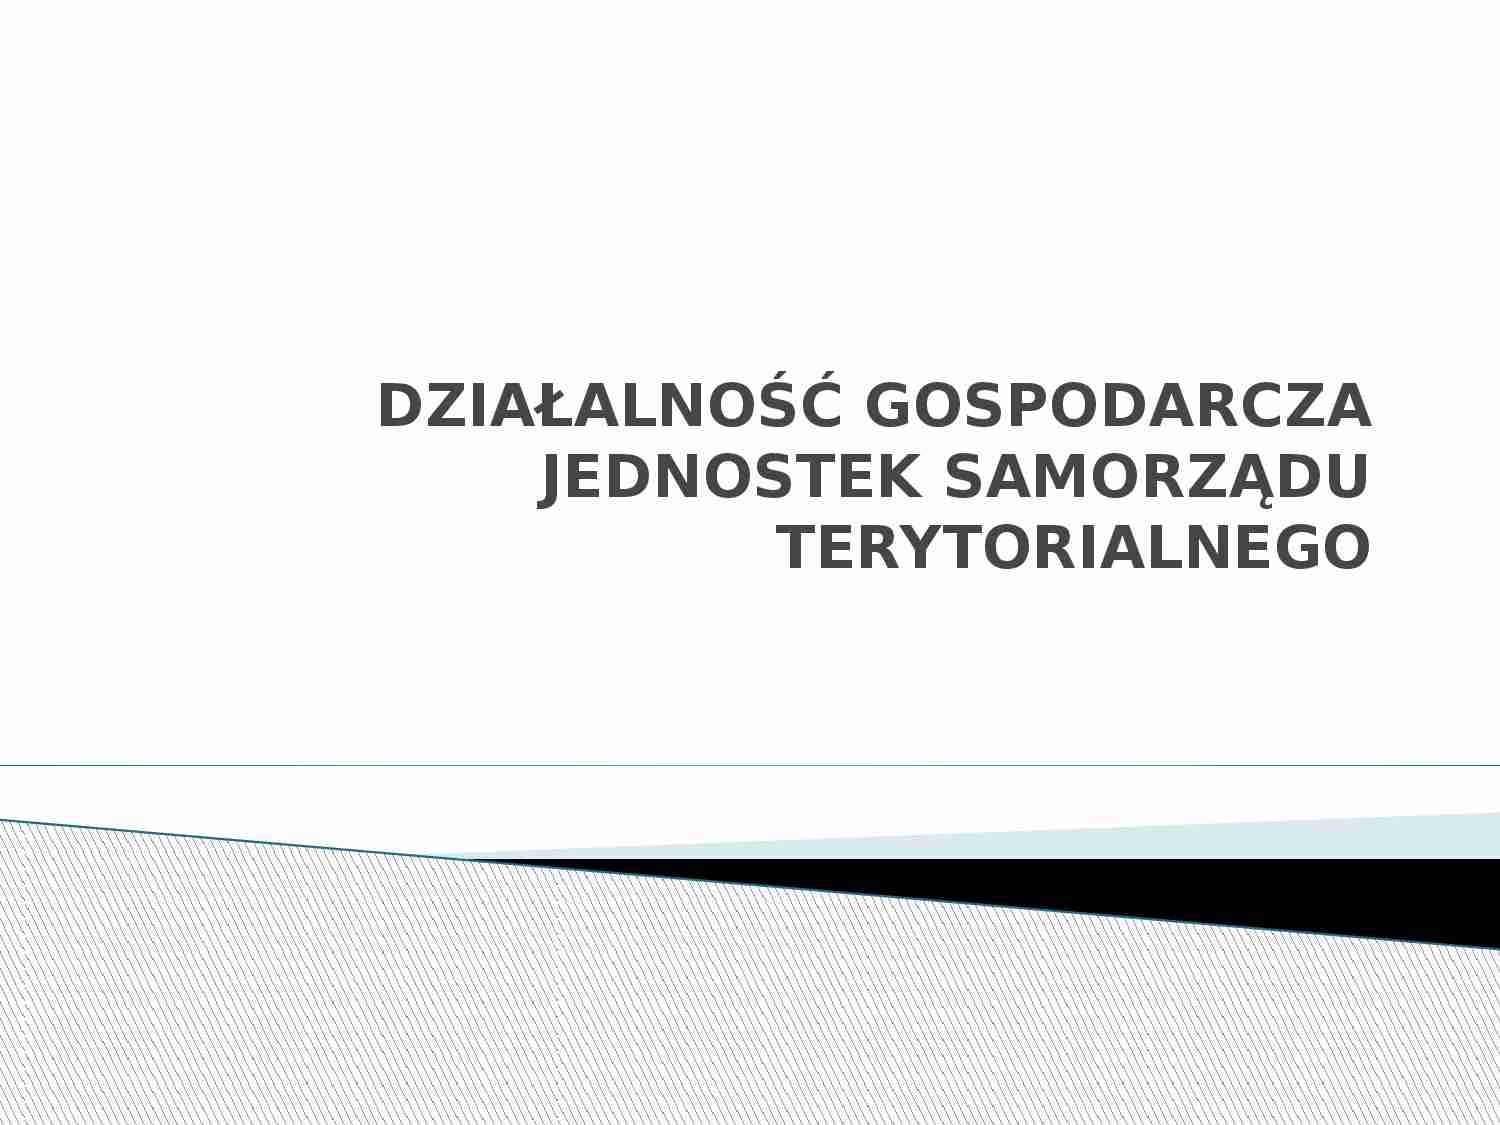 Działalność gospodarcza jednostek samorządu terytorialnego - prezentacja. - strona 1